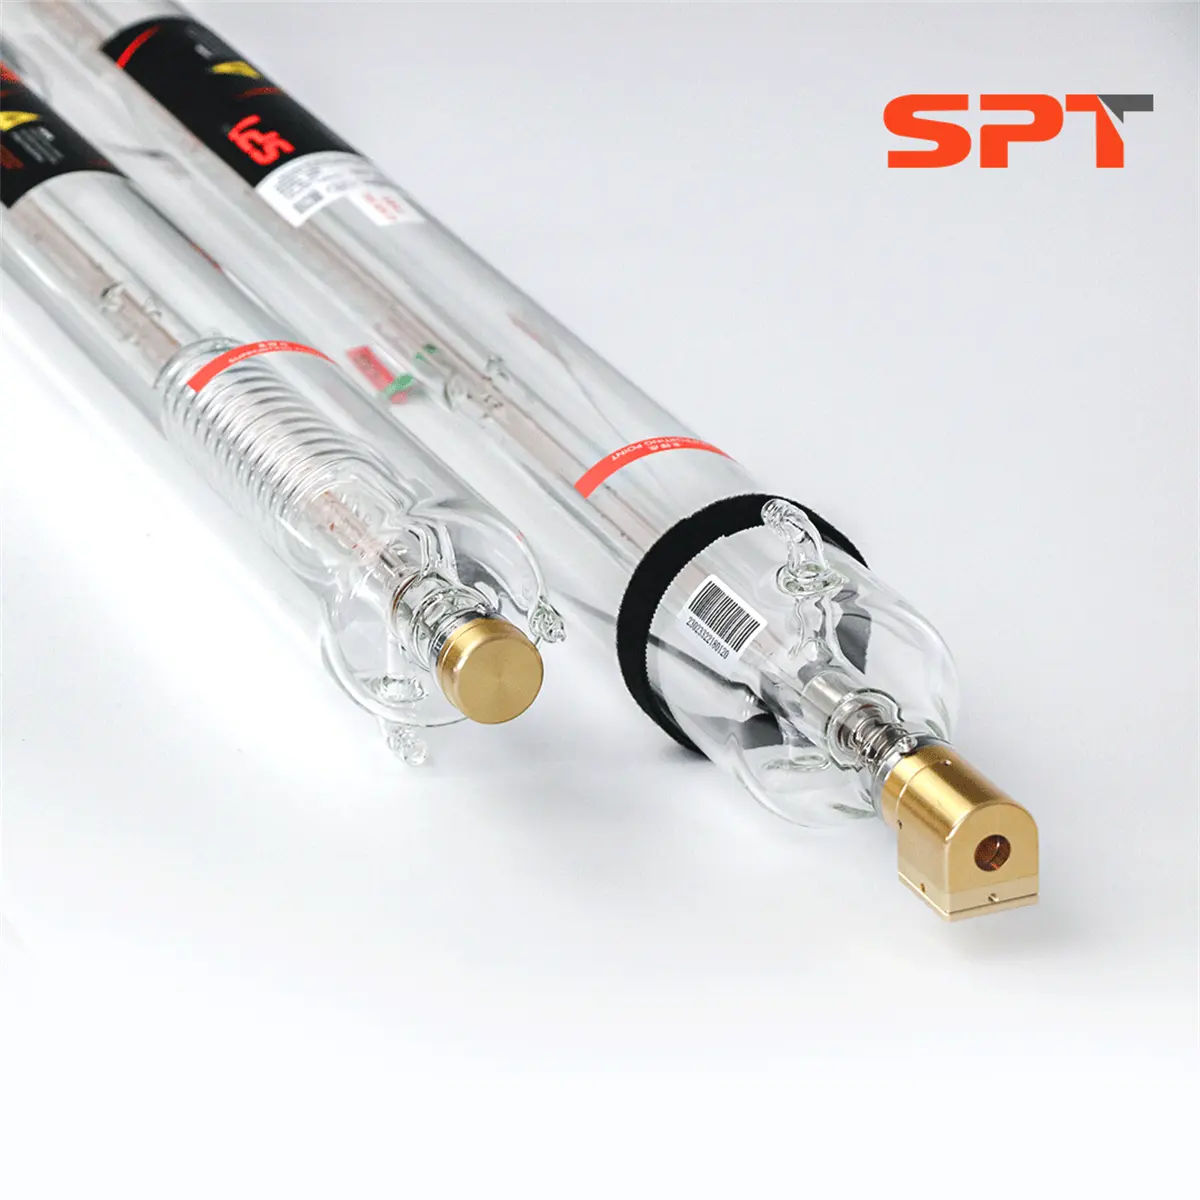 Tube laser SPT haute puissance 100w CO2 avec pointeur rouge pour la découpe laser de matériaux Non métalliques tels que l'acrylique/MDF